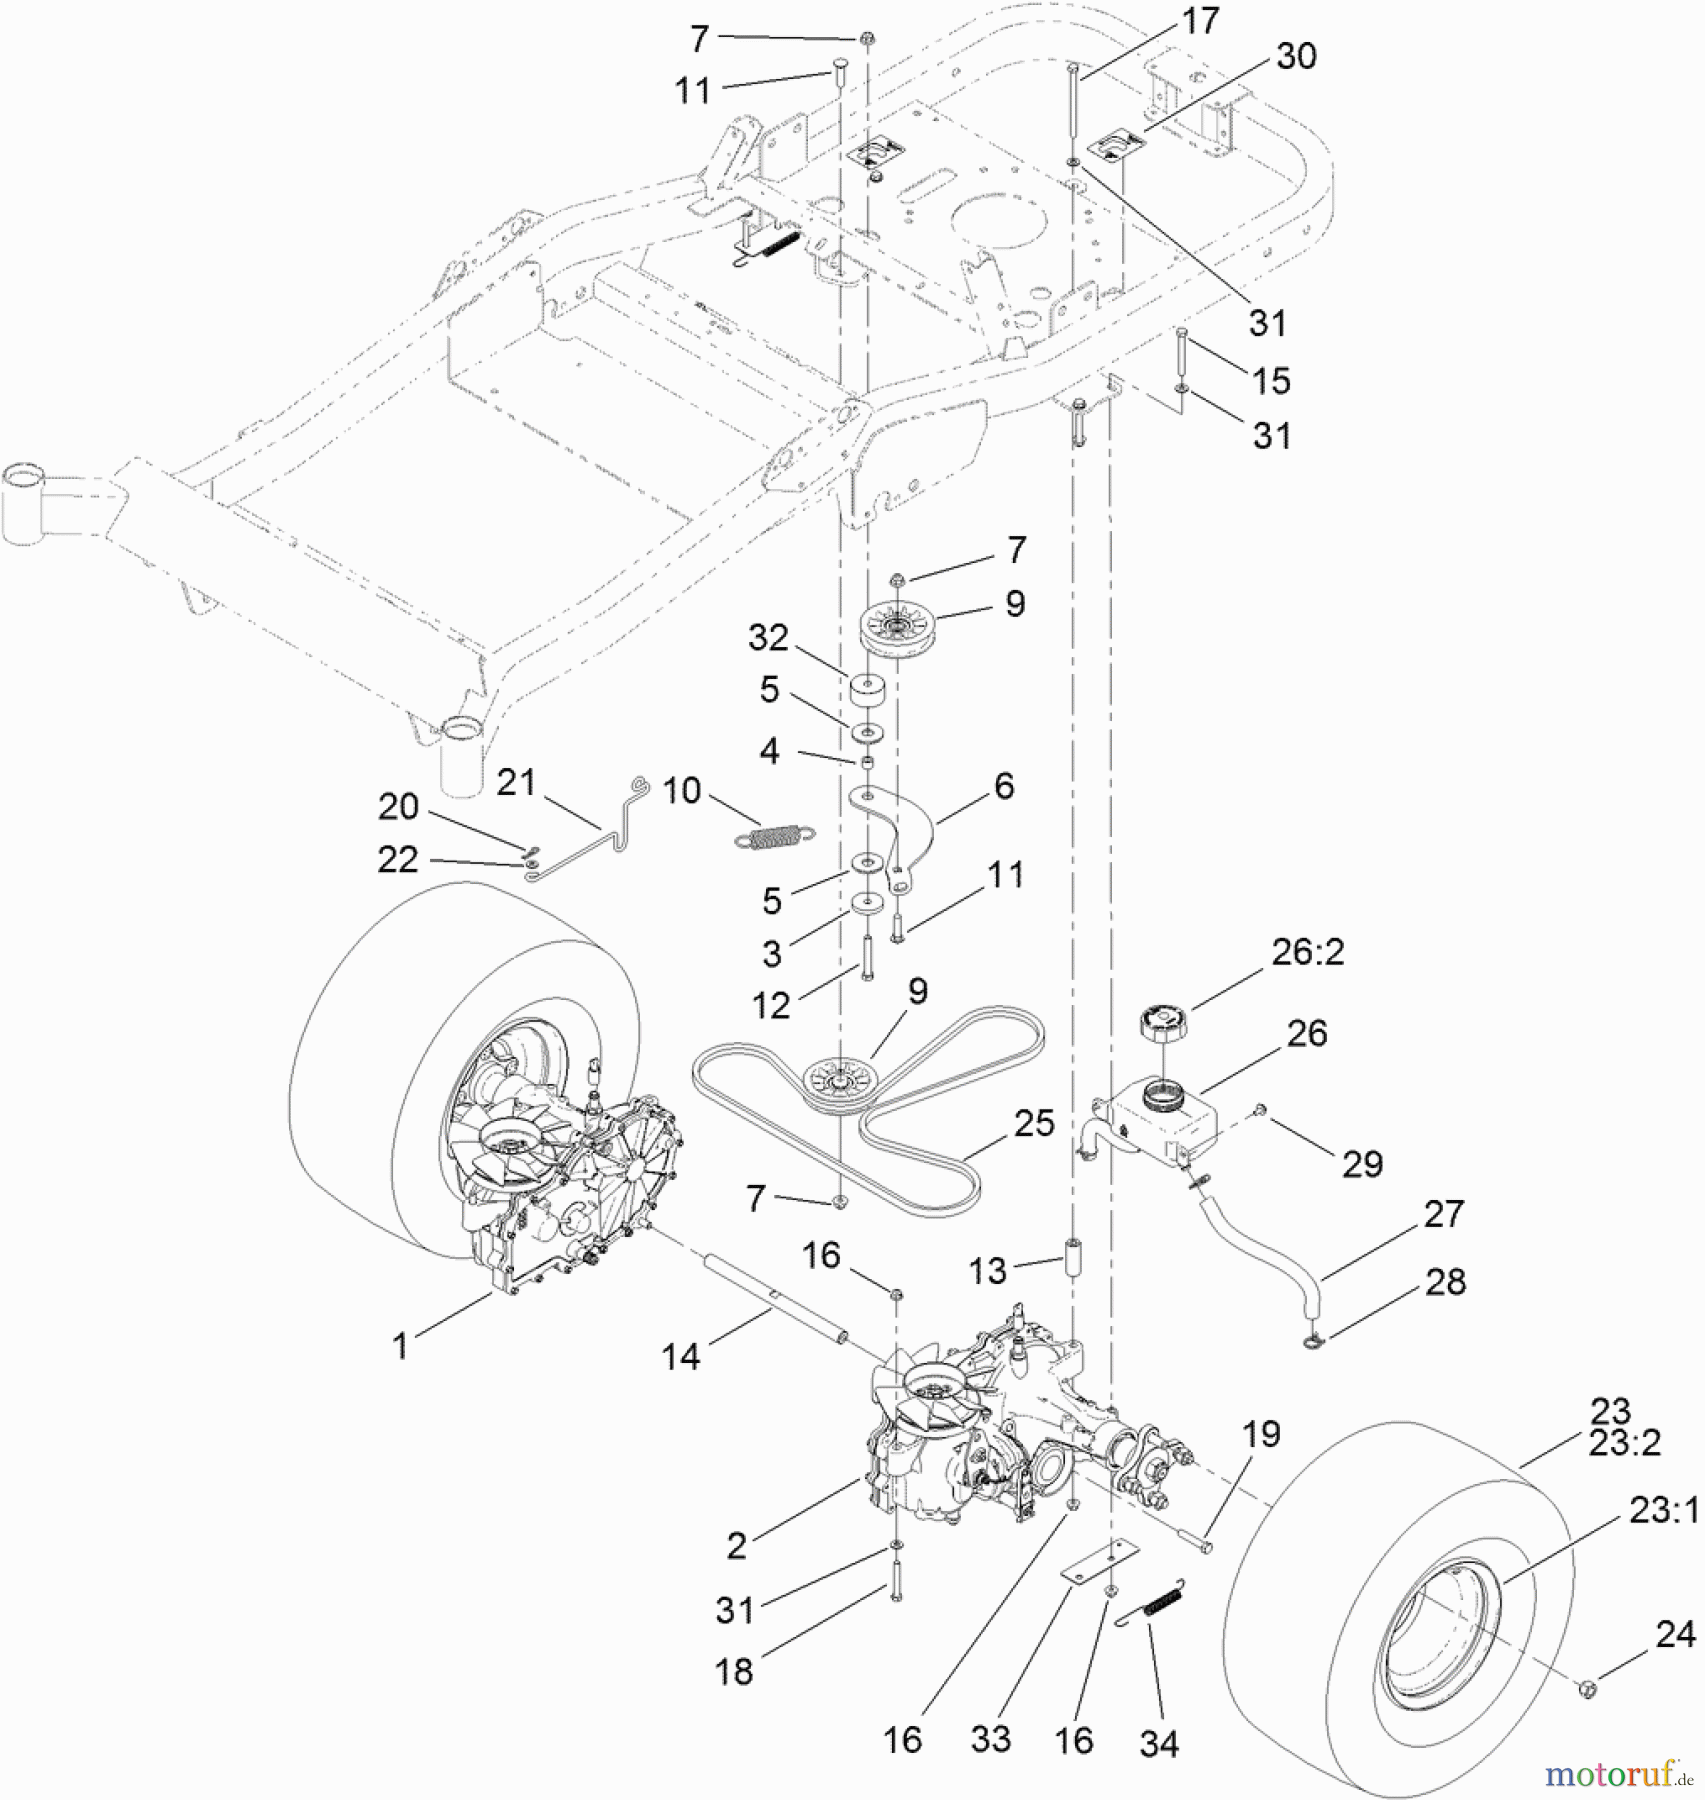  Toro Neu Mowers, Zero-Turn 74845 (ZX4820) - Toro TITAN ZX4820 Zero-Turn-Radius Riding Mower, 2012 (SN 312000001-312999999) TRACTION DRIVE ASSEMBLY